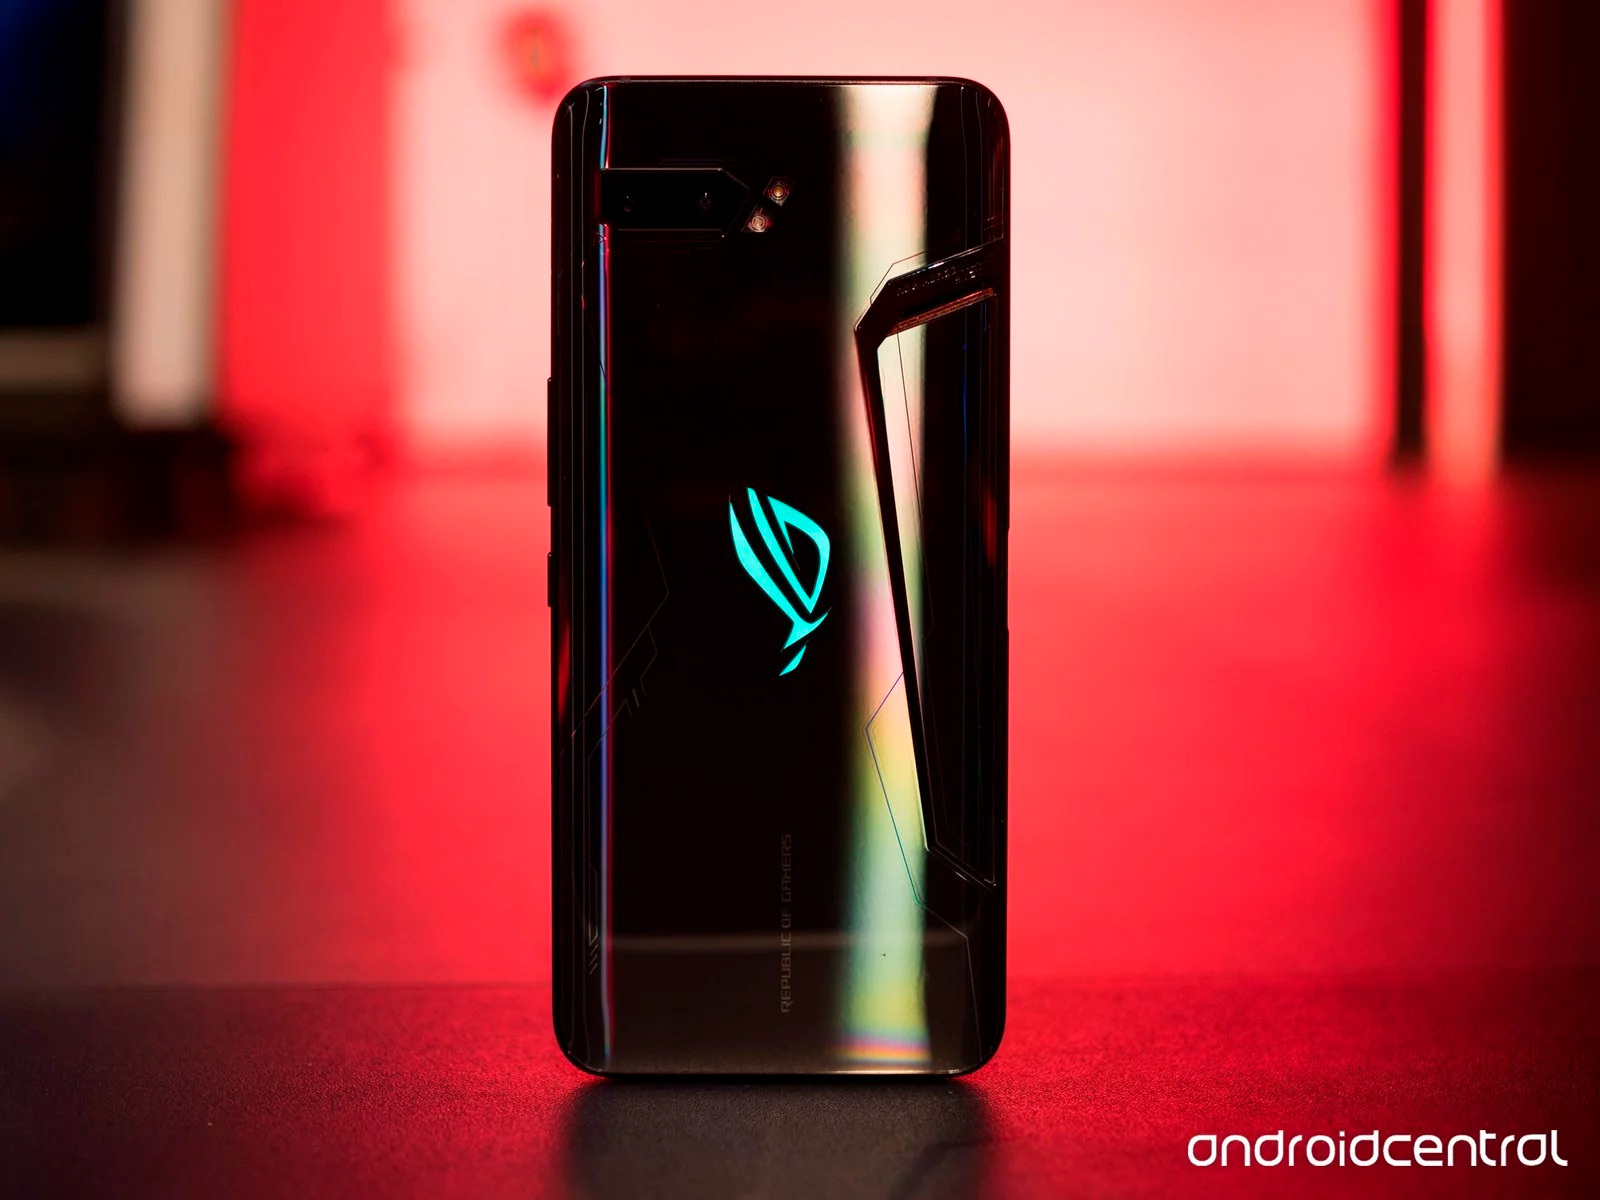 Asus ROG Phone II: precio y disponibilidad del nuevo móvil gaming